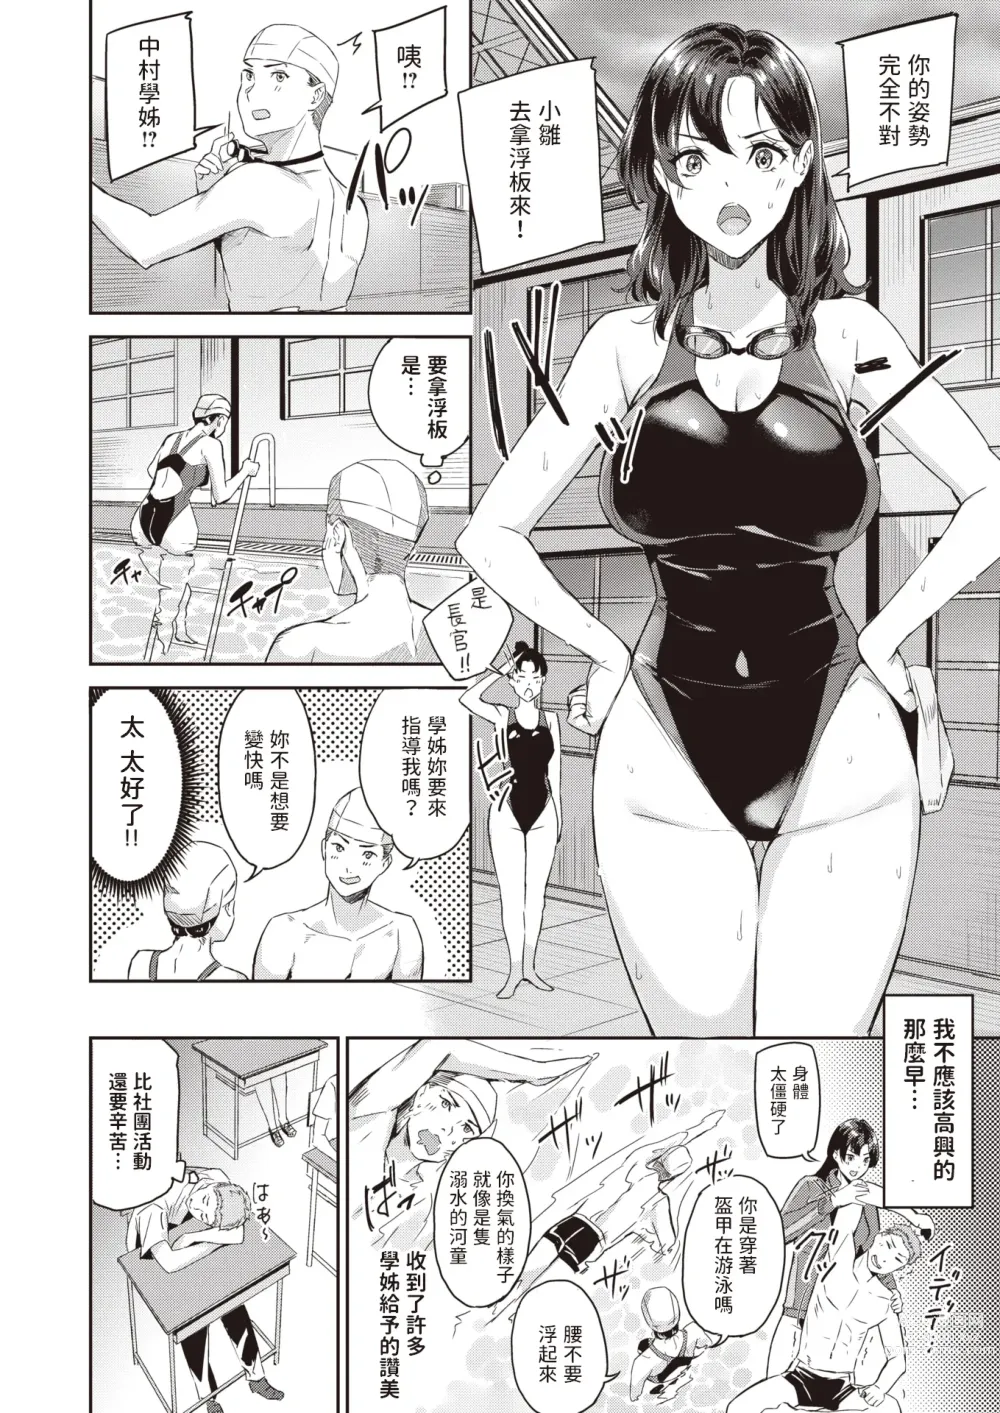 Page 4 of manga Splash!